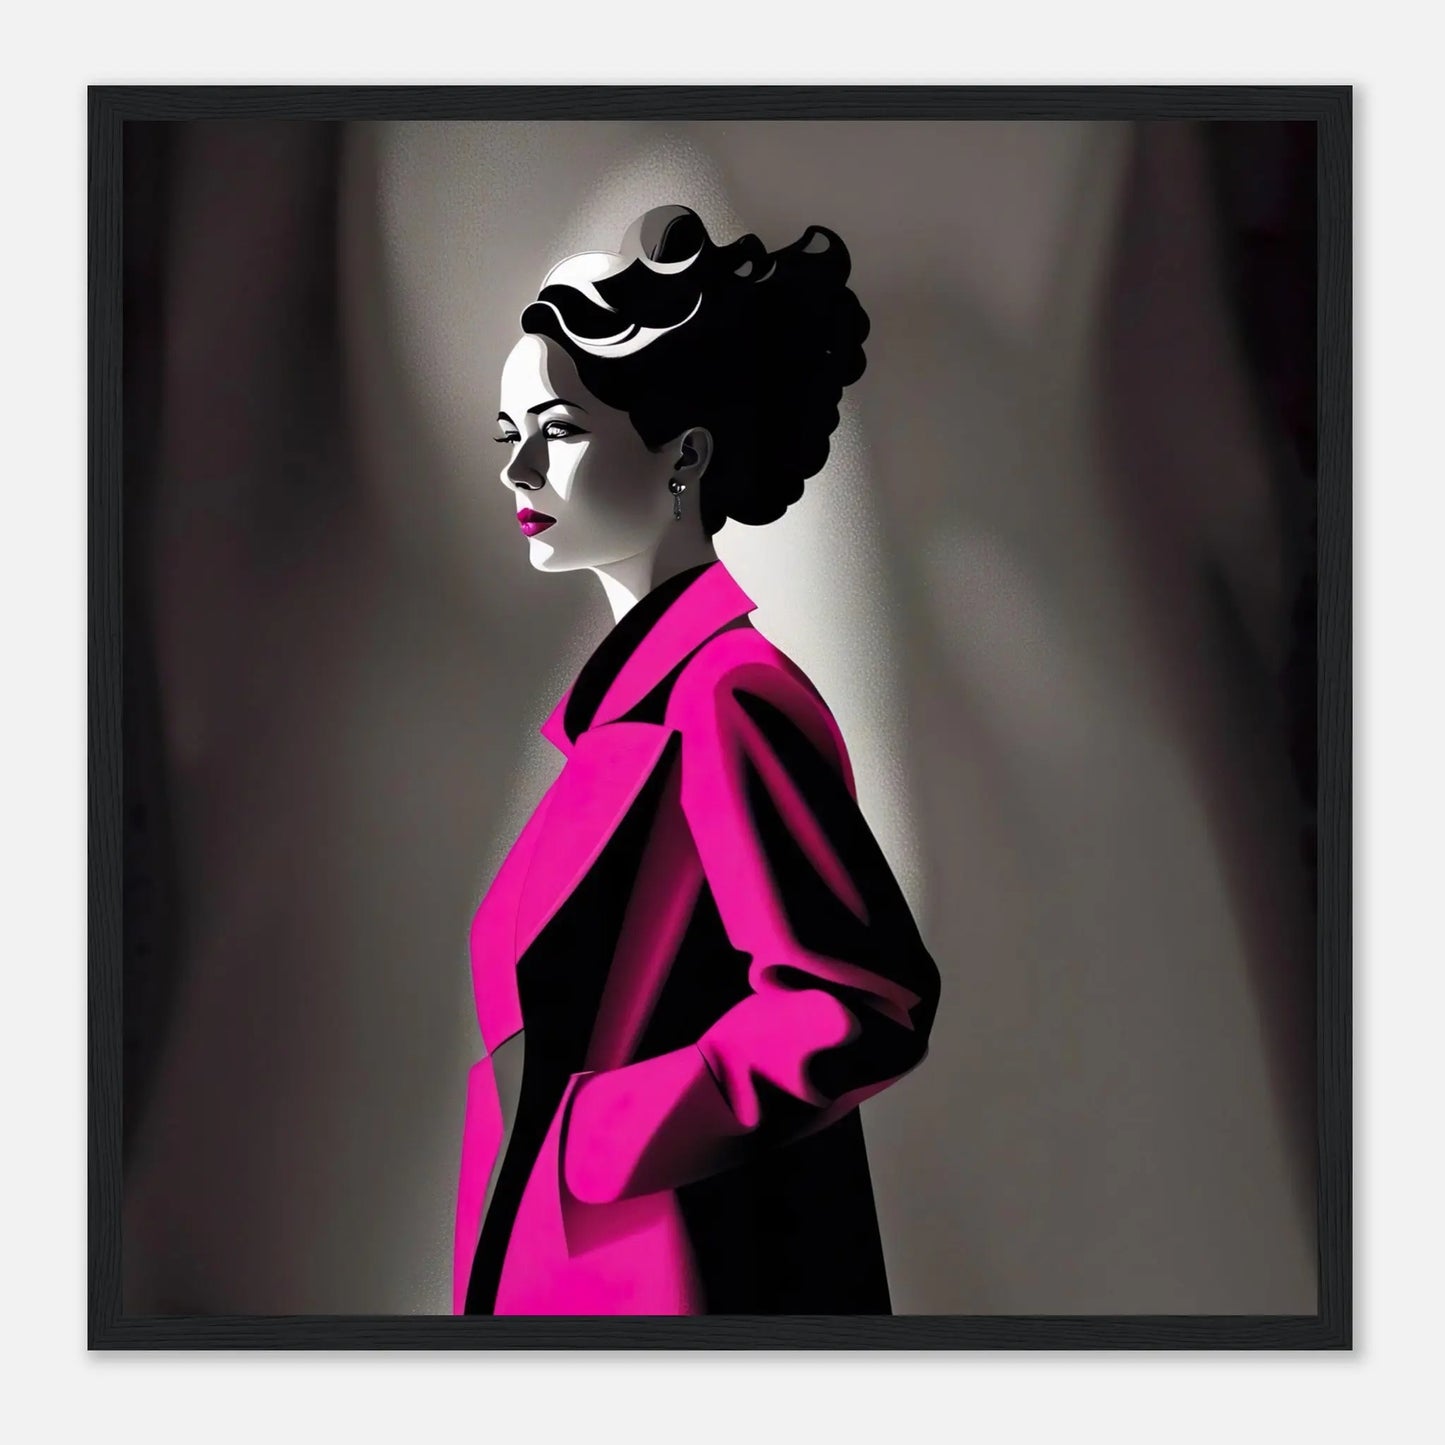 Gerahmtes Premium-Poster - Frau im rosa Mantel - Schwarz-Weiß, KI-Kunst - RolConArt, Schwarz-Weiß mit Akzentfarben, 50x50-cm-20x20-Schwarzer-Rahmen